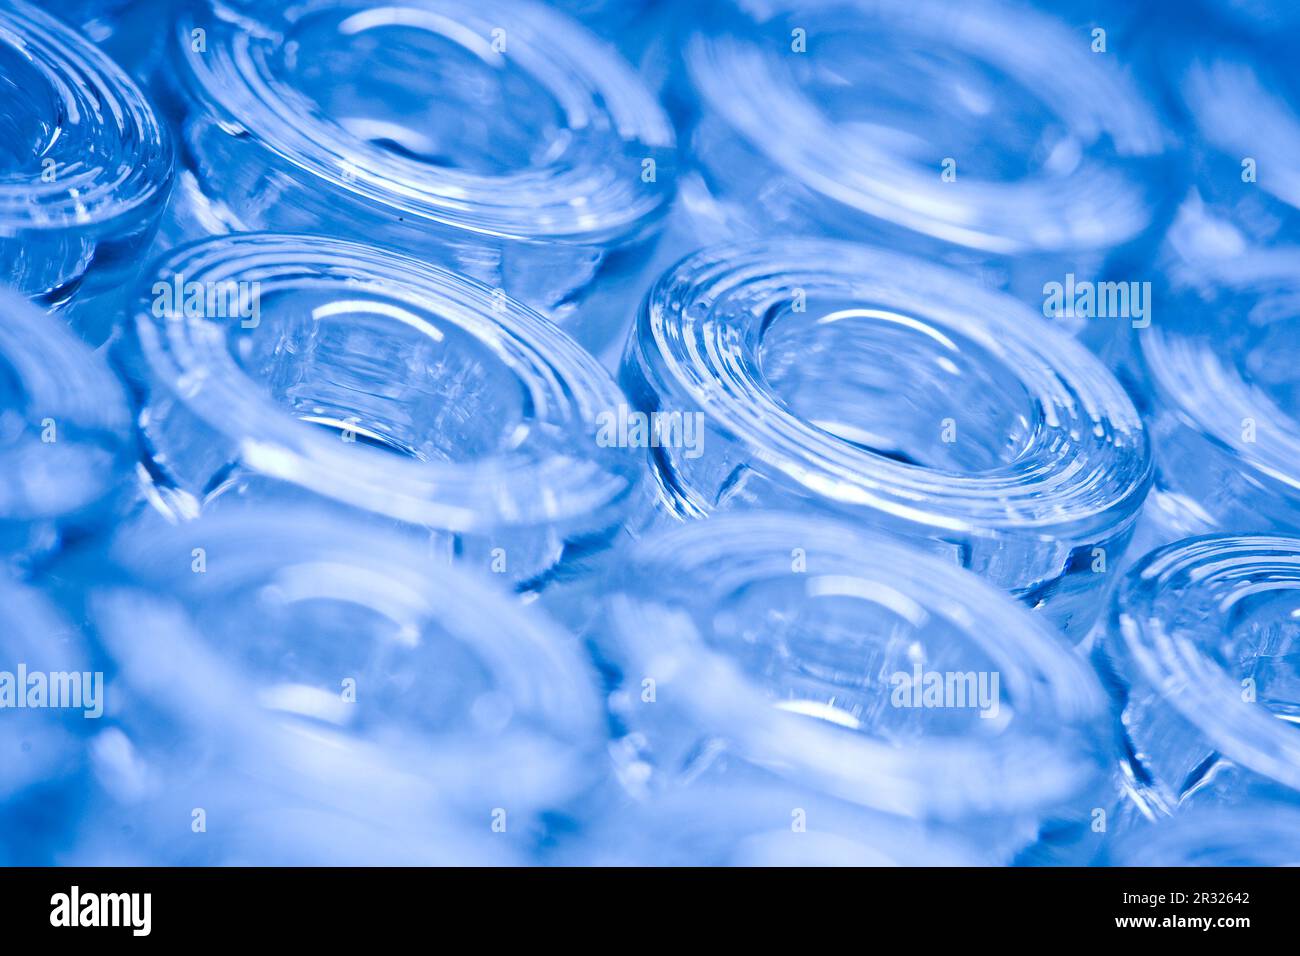 detail makro aufnahme von blauen glas ampullen Stock Photo